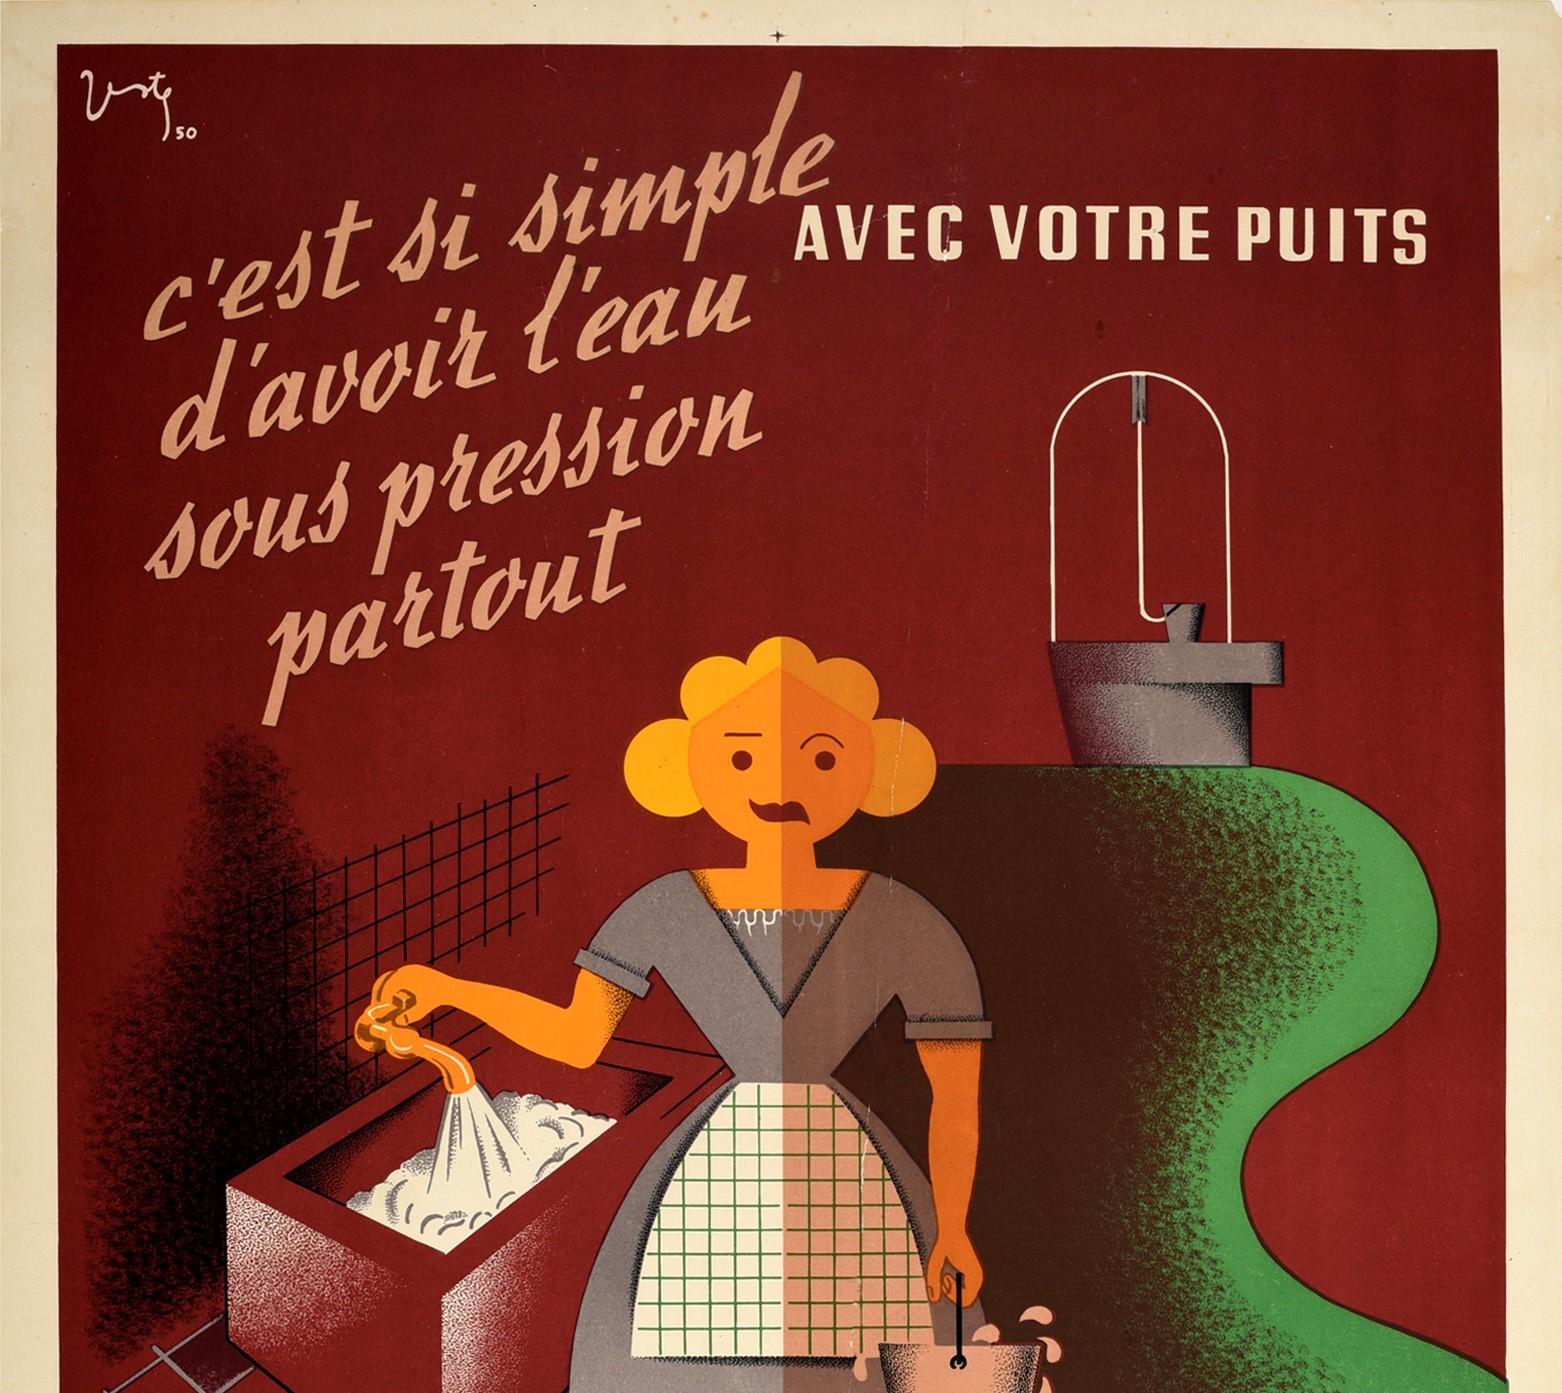 Original Vintage Advertising Poster Pompes Jeumont Water Pumps Modernist Design - Print by Verte